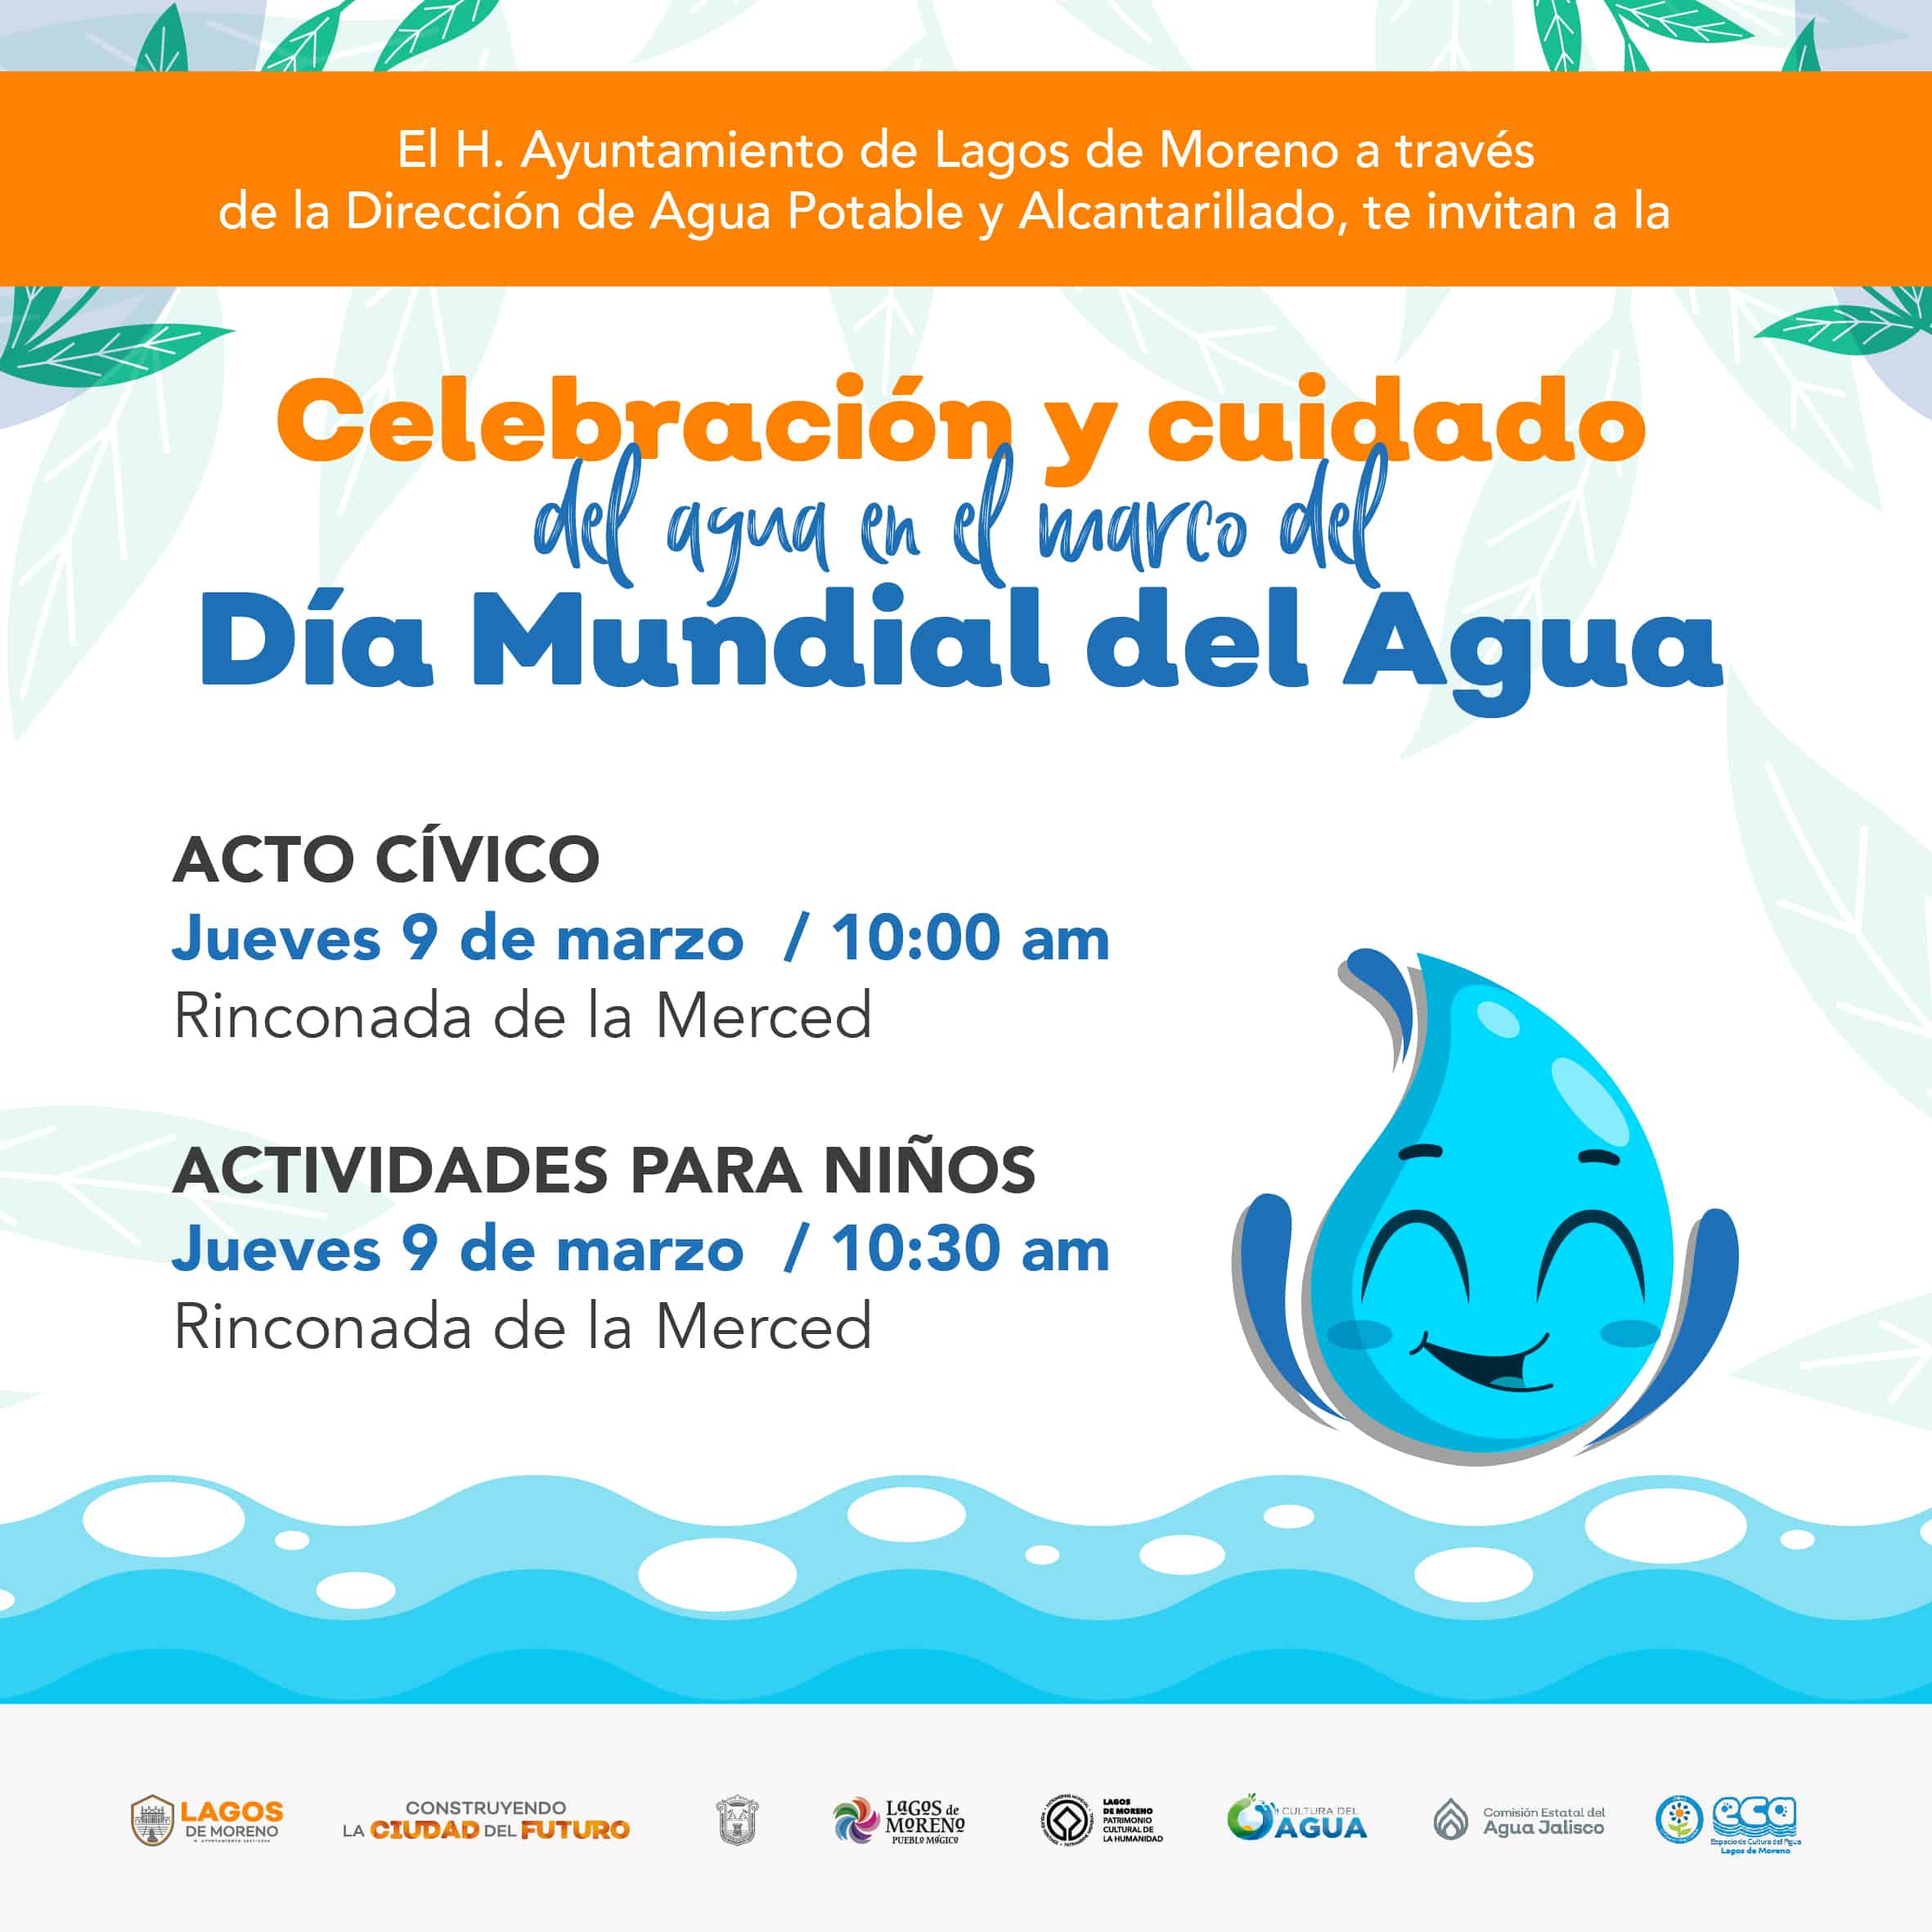 Ayuntamiento de Lagos de Moreno prepara celebración del día mundial del Agua